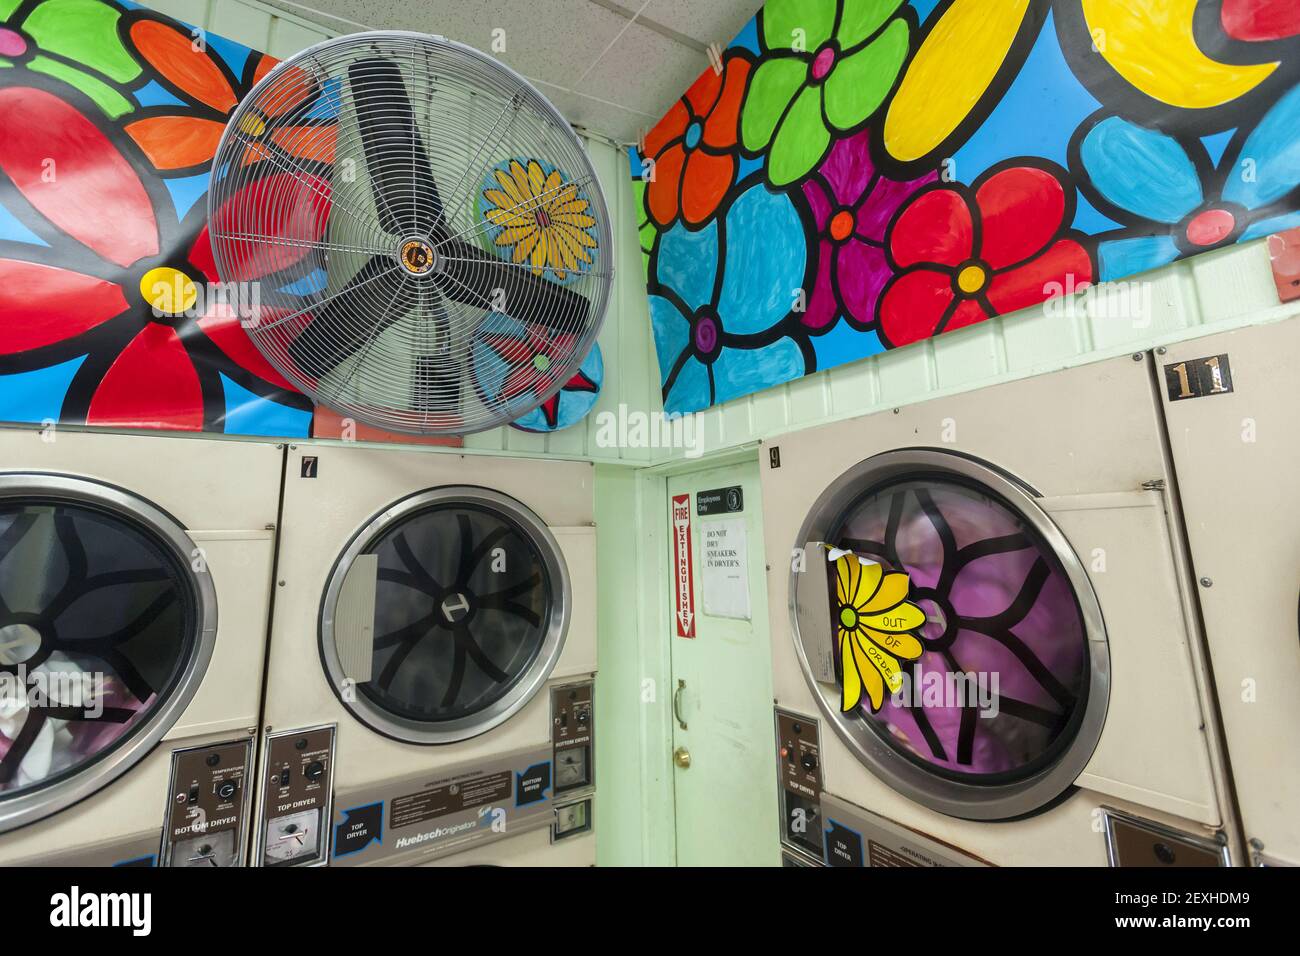 La laverie automatique Happy Family située dans le quartier Bronx de New  York le vendredi 16 mai 2014 est décorée pour un événement promotionnel sur  le détergent gain Procter & Gamble. Procter